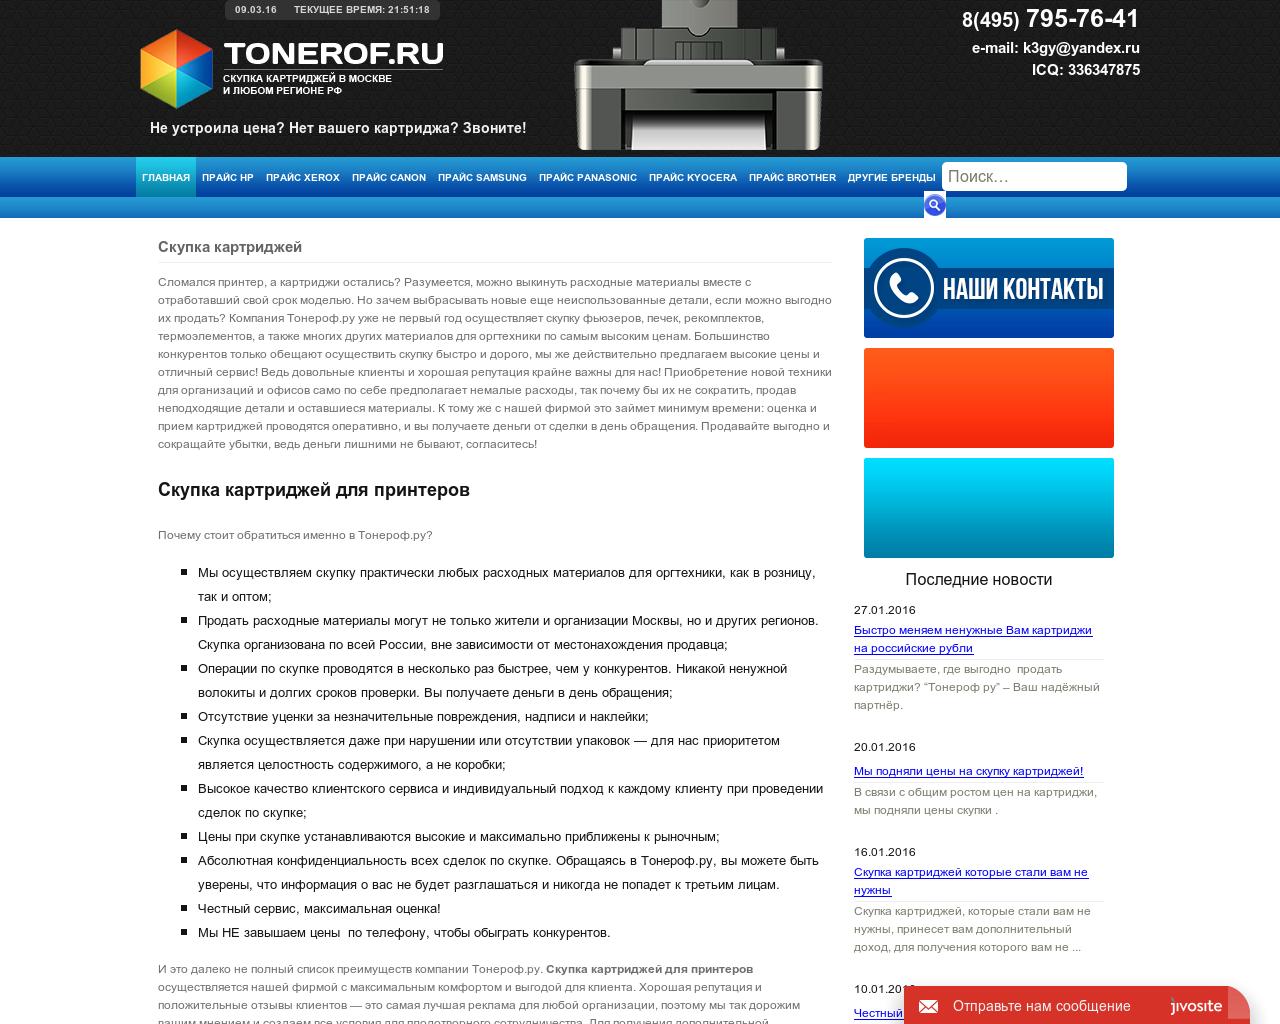 Изображение сайта tonerof.ru в разрешении 1280x1024